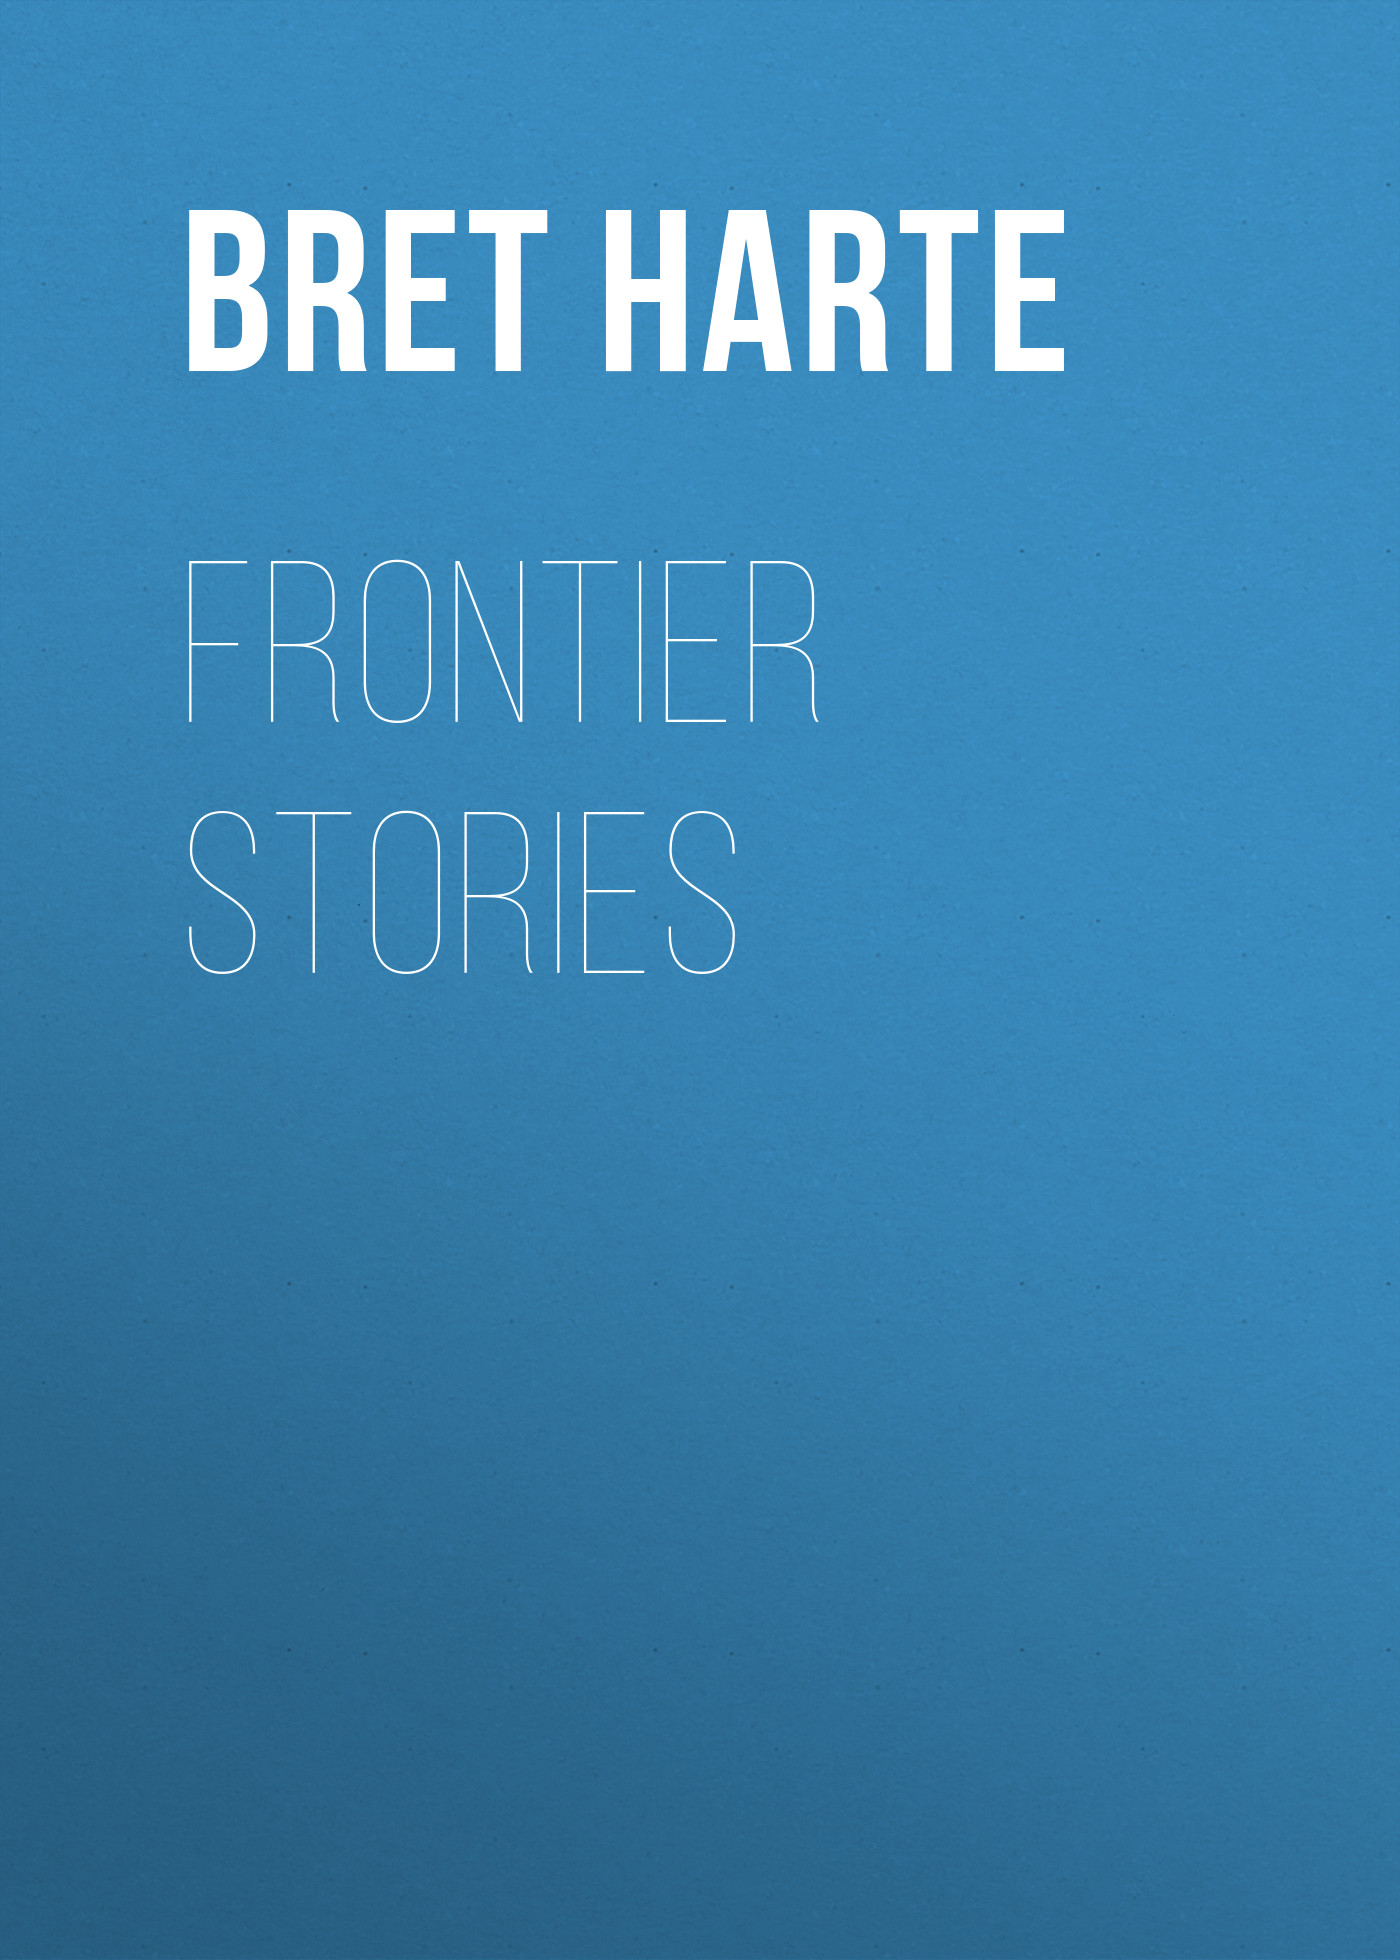 Frontier Stories